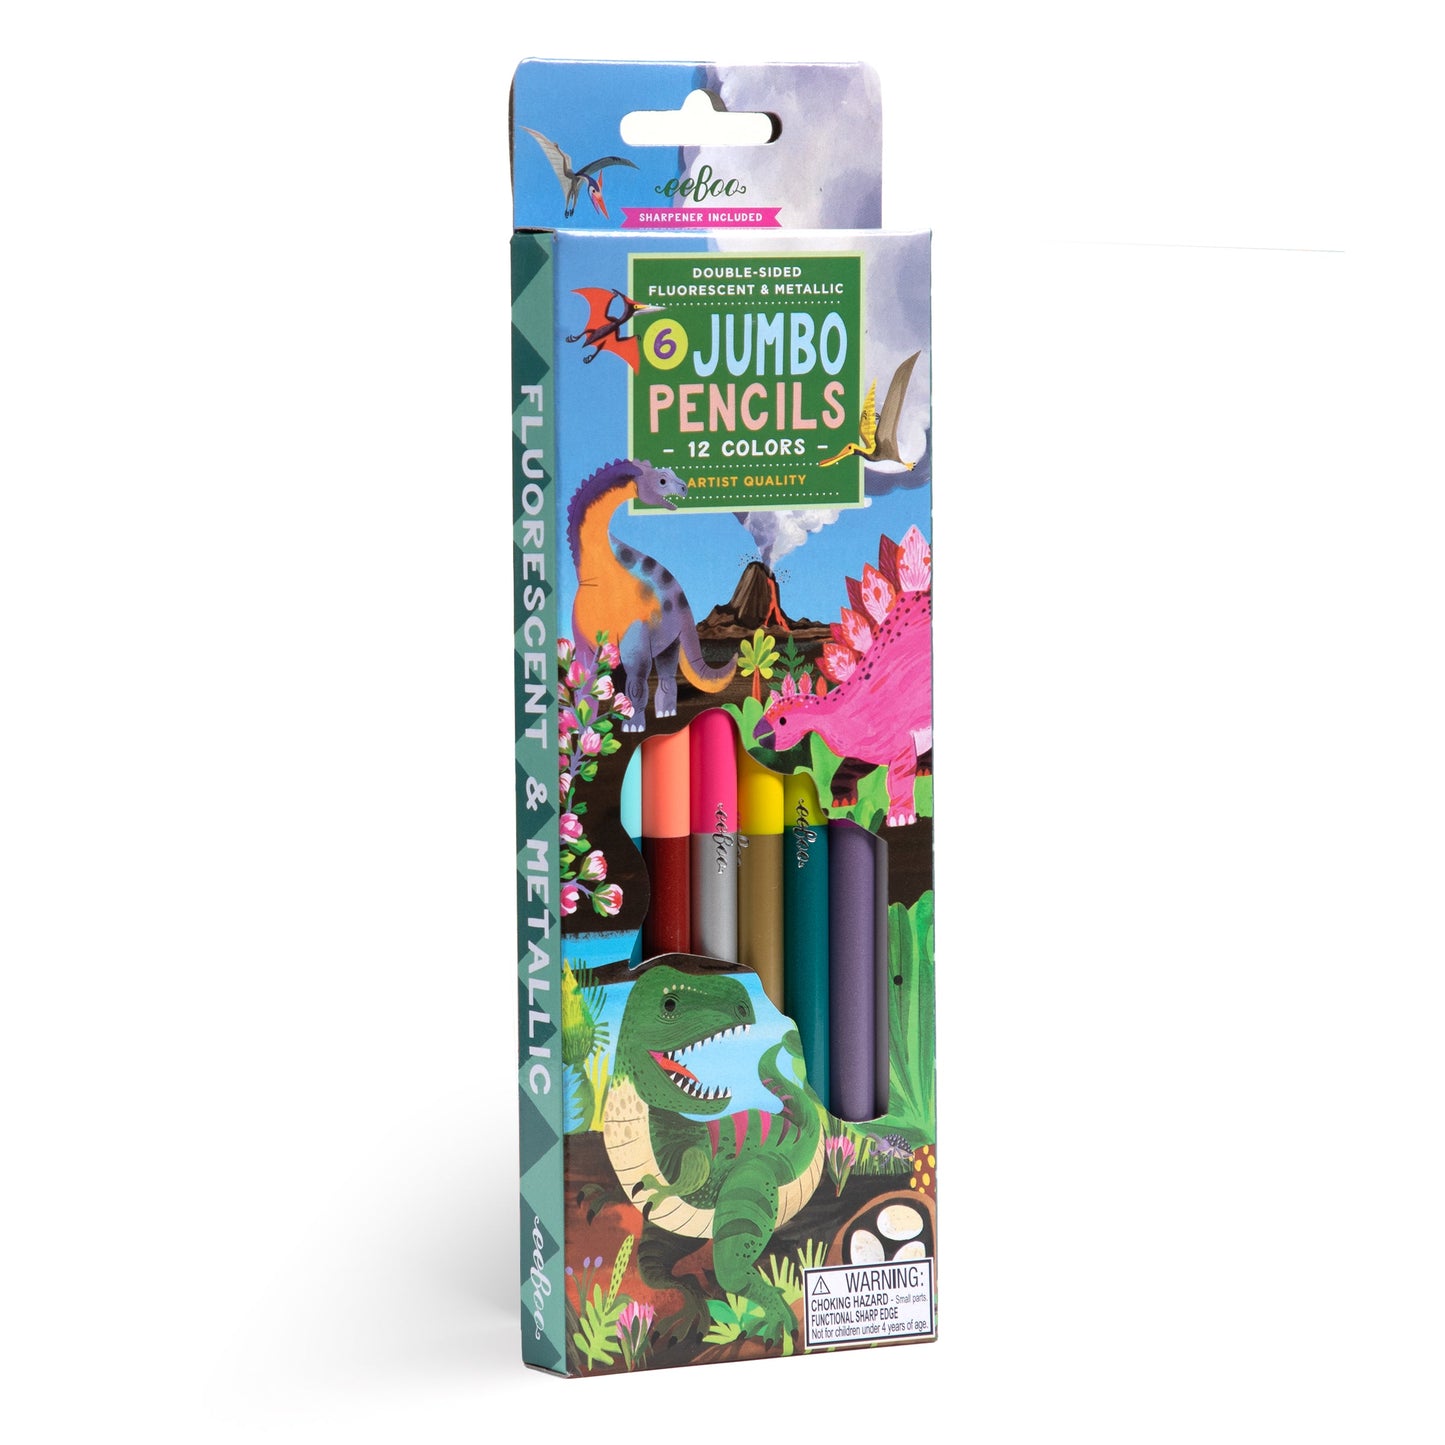 Dinosaur 6 Jumbo Special Pencils by eeBoo | Unique Fun Gifts